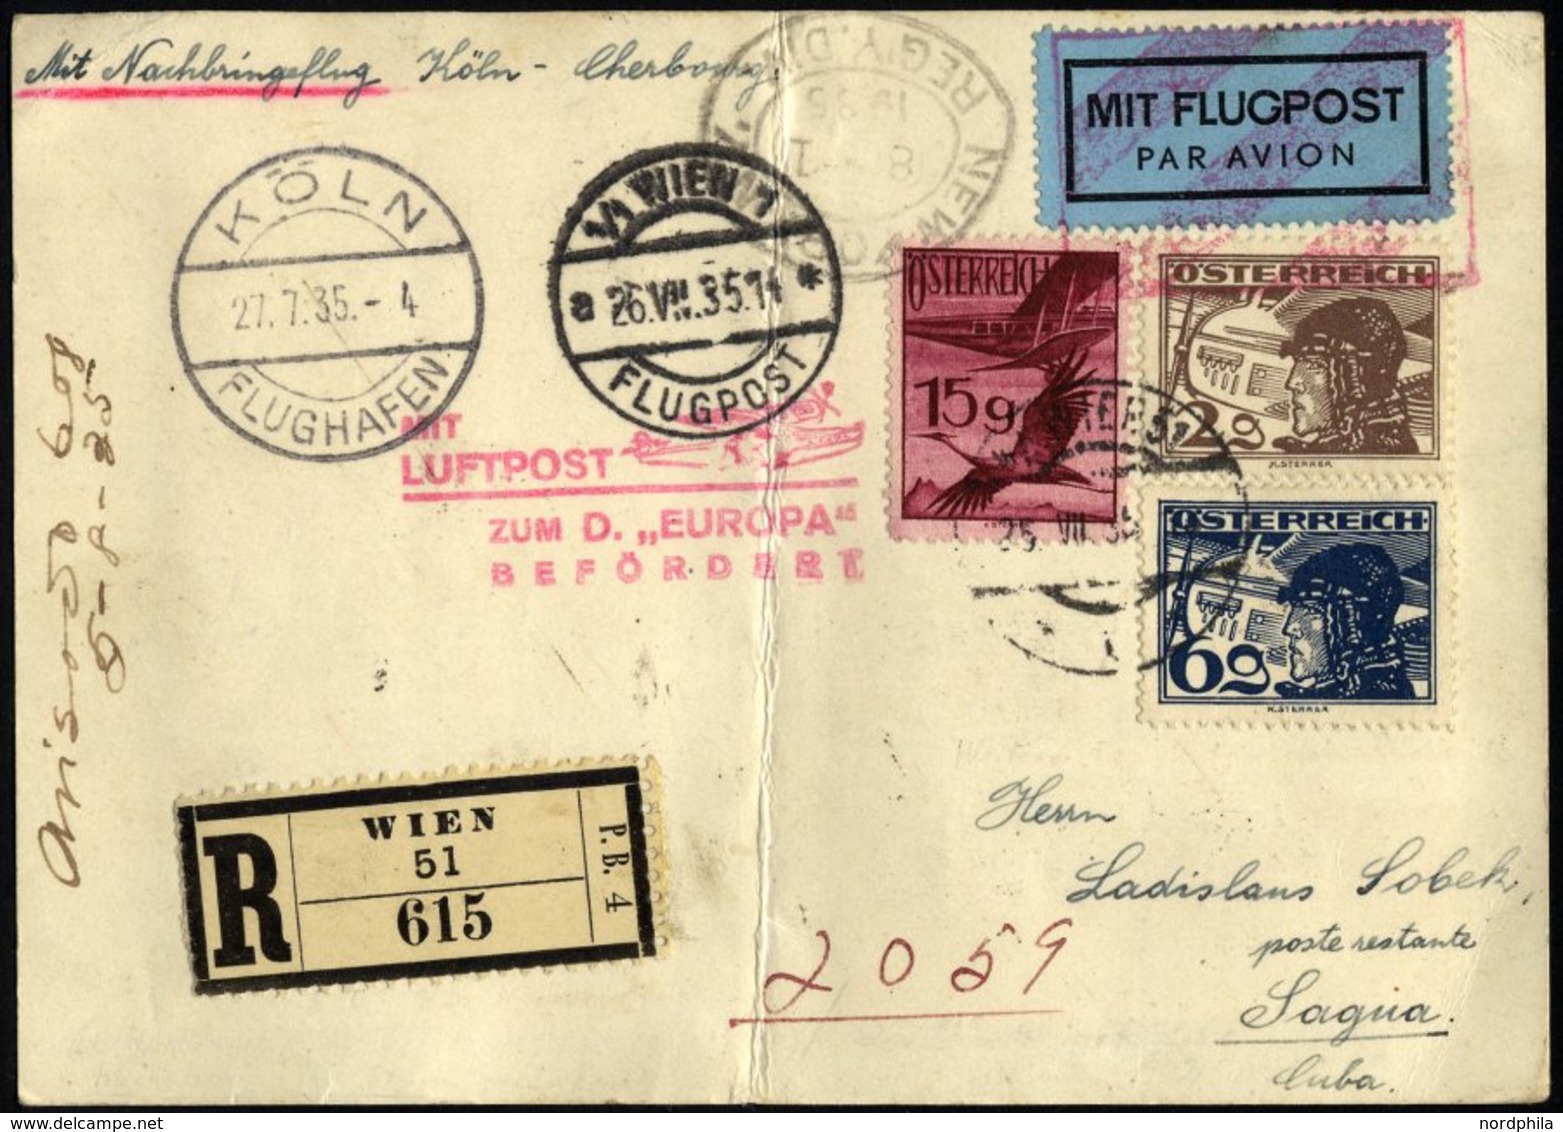 FLUGPOST BIS 1938 97 BRIEF, 27.7.1935, Mit Lufpost Zur EUROPA, Nachbringeflug Köln-Cherbourg, Ab Wien Mit österreichisch - Premiers Vols